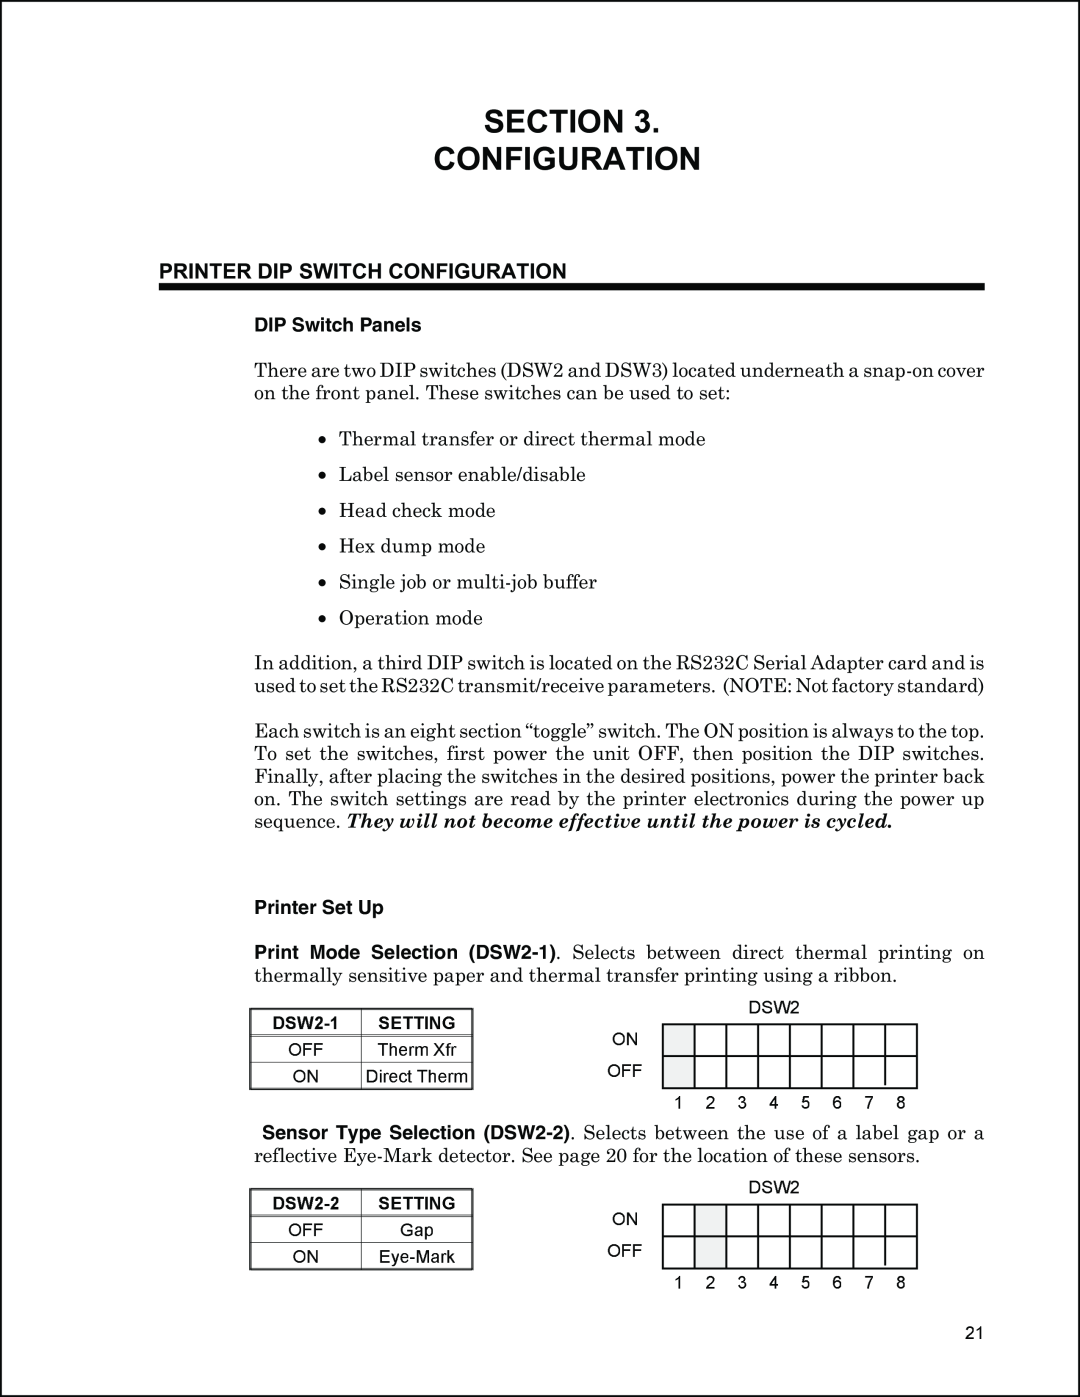 Panduit PTR3E Section Configuration, DSW2-1SETTING, Printer Dip Switch Configuration, DIP Switch Panels, Printer Set Up 